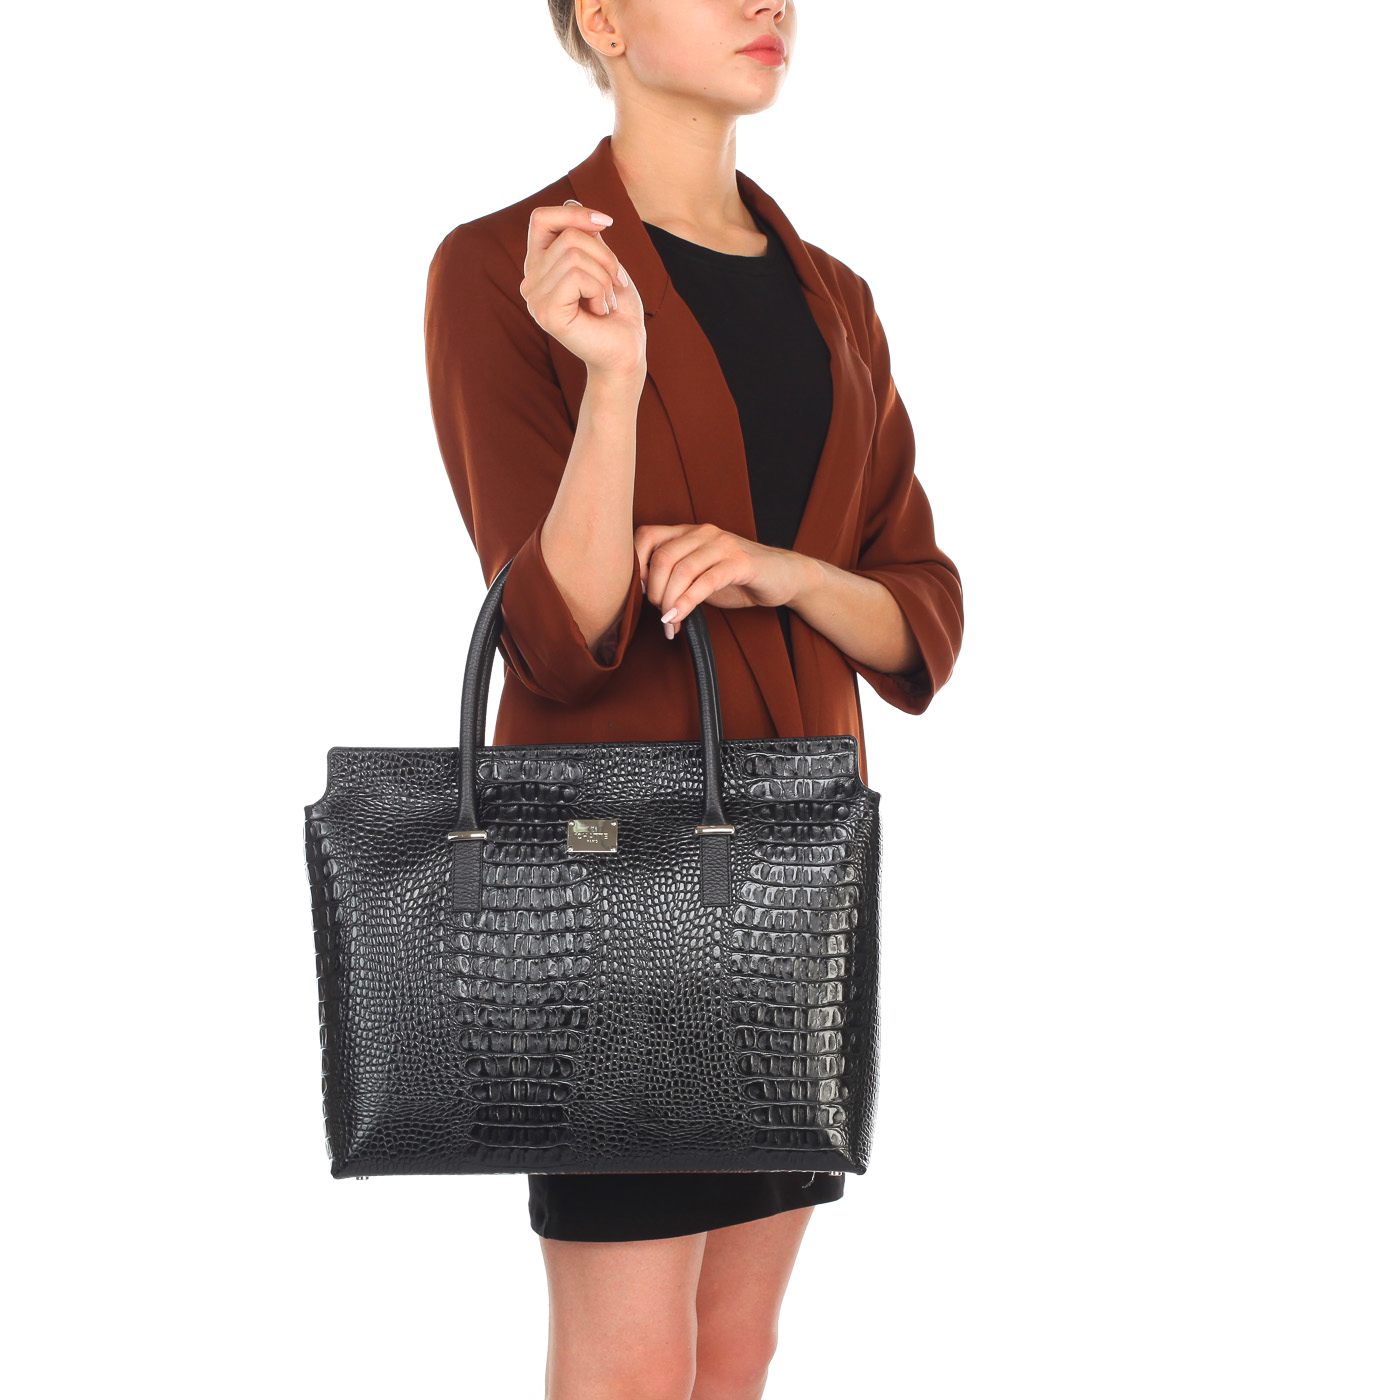 Женская черная сумка с отделкой под крокодиловую кожу Chatte 